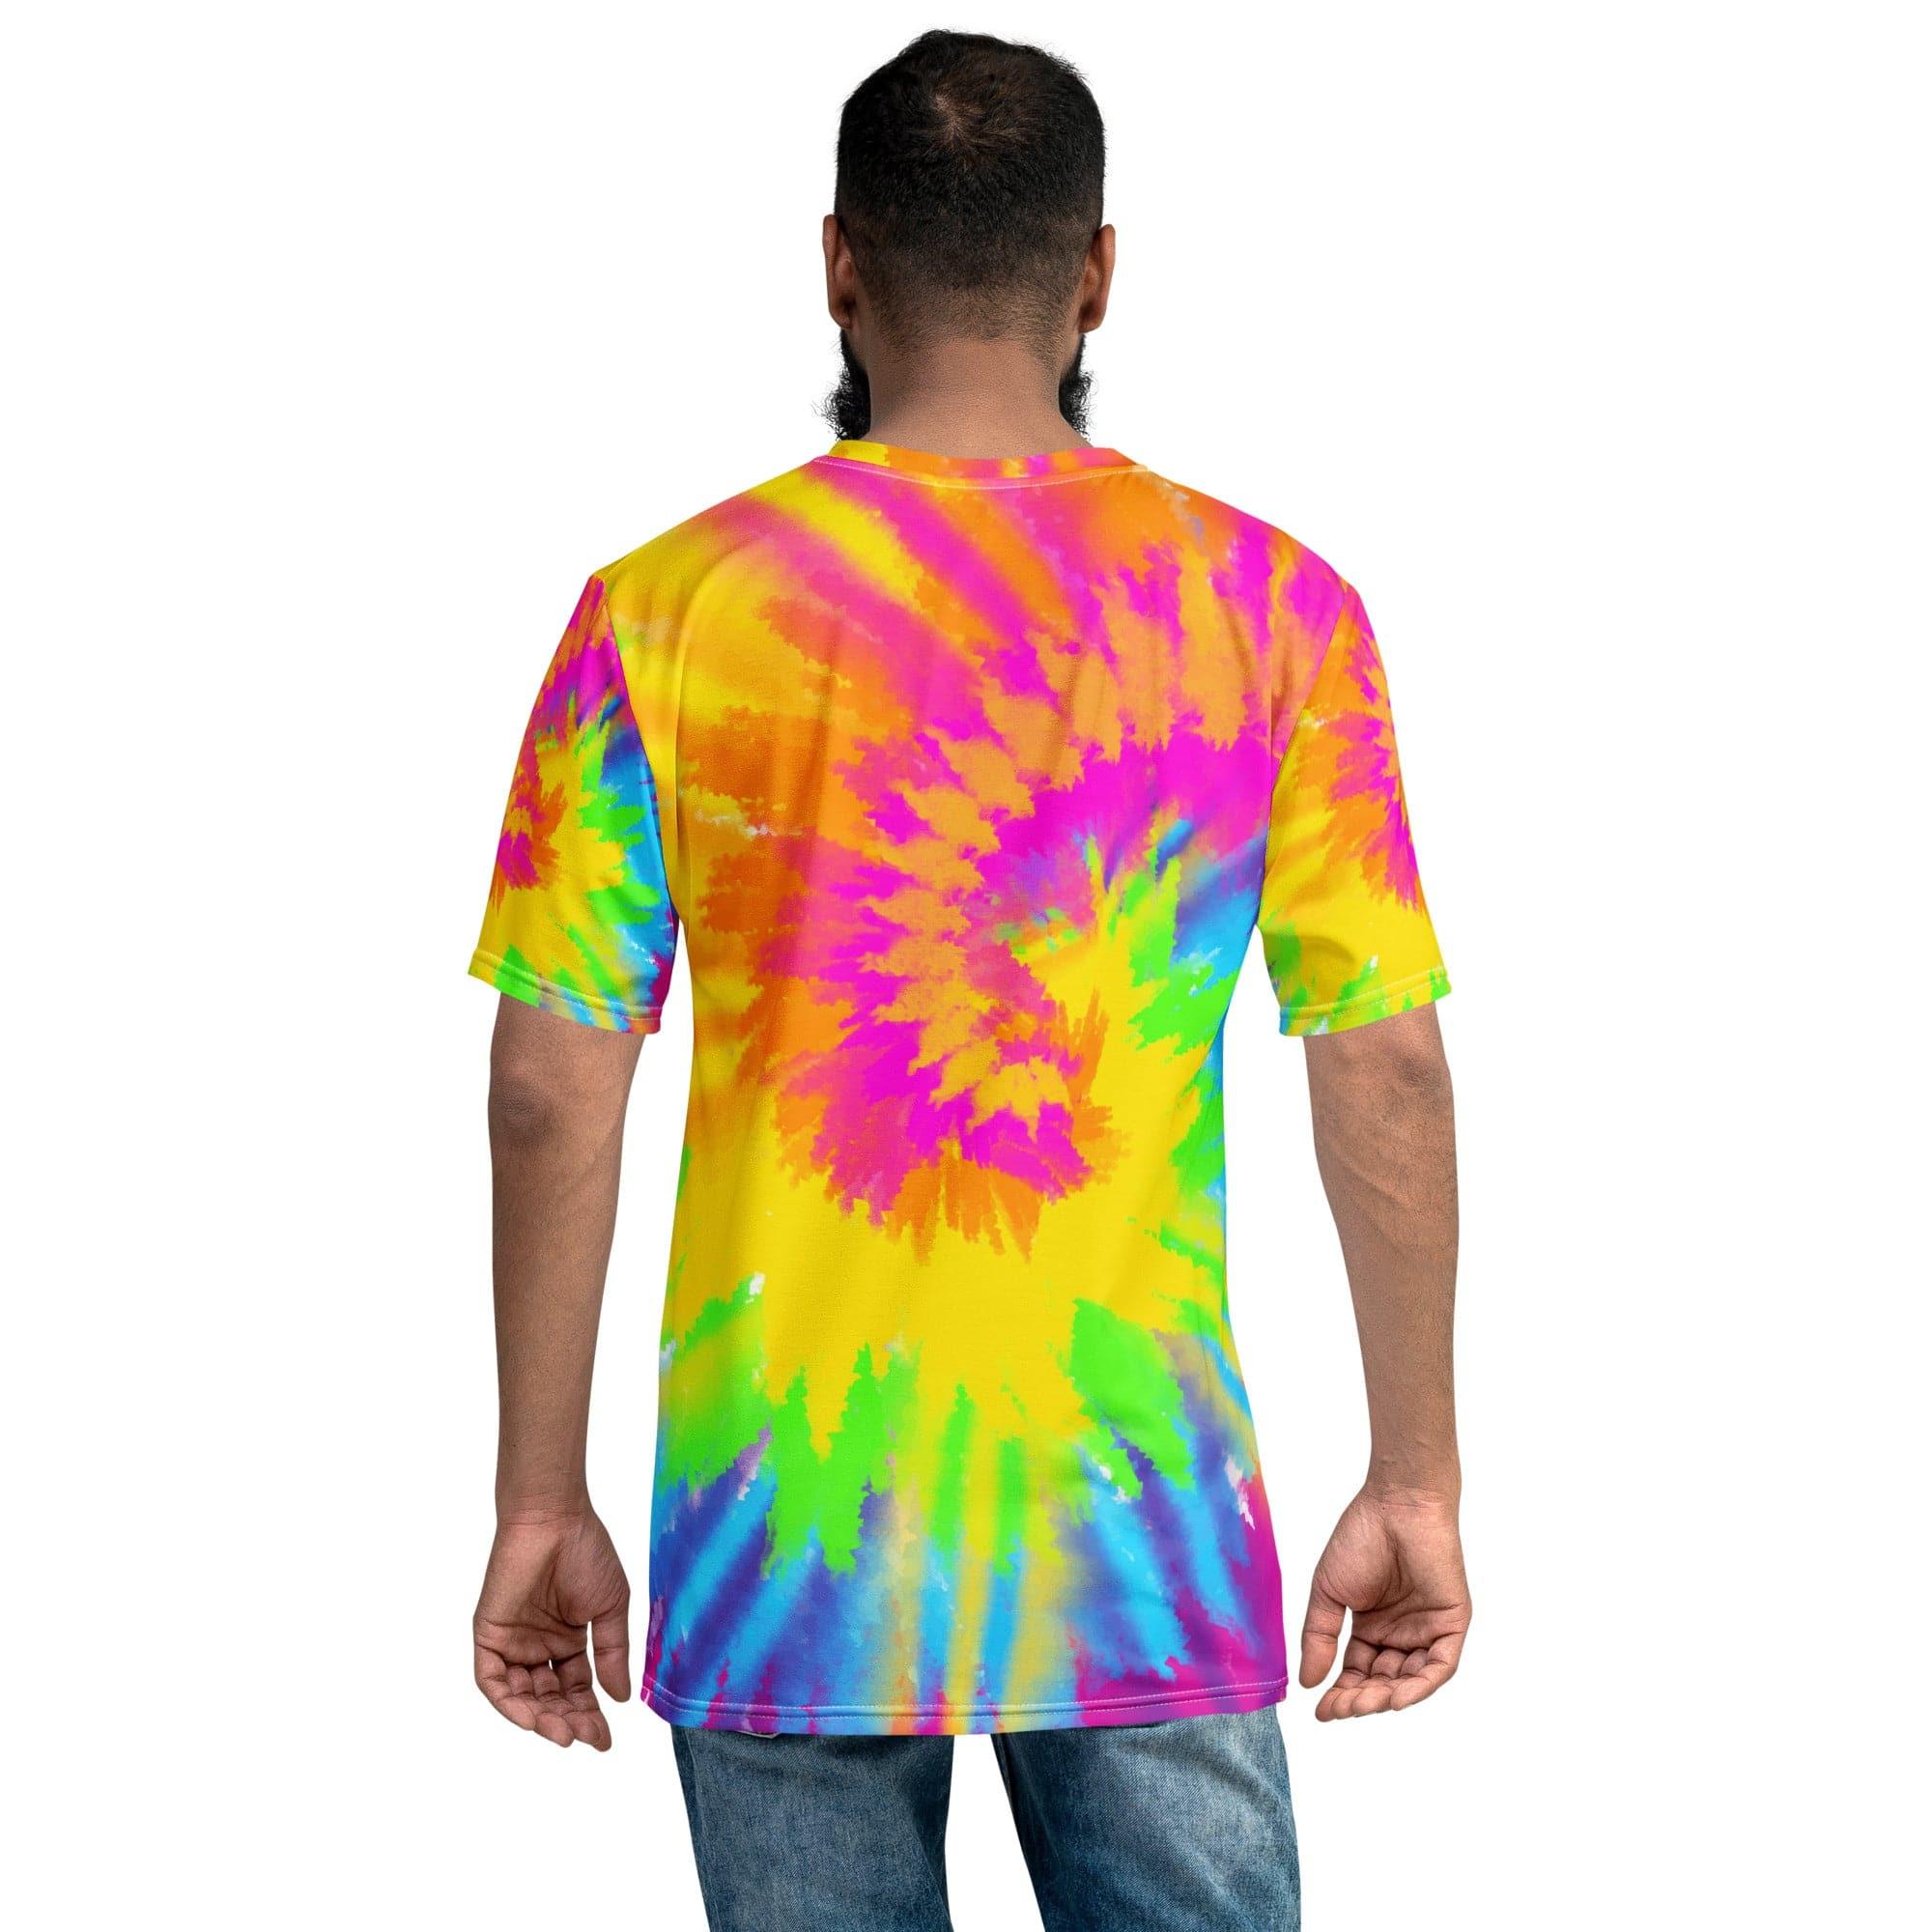 Cheech and Chong T-shirt Up in Smoke Mystery Van Tie Dye Top - TopKoalaTee